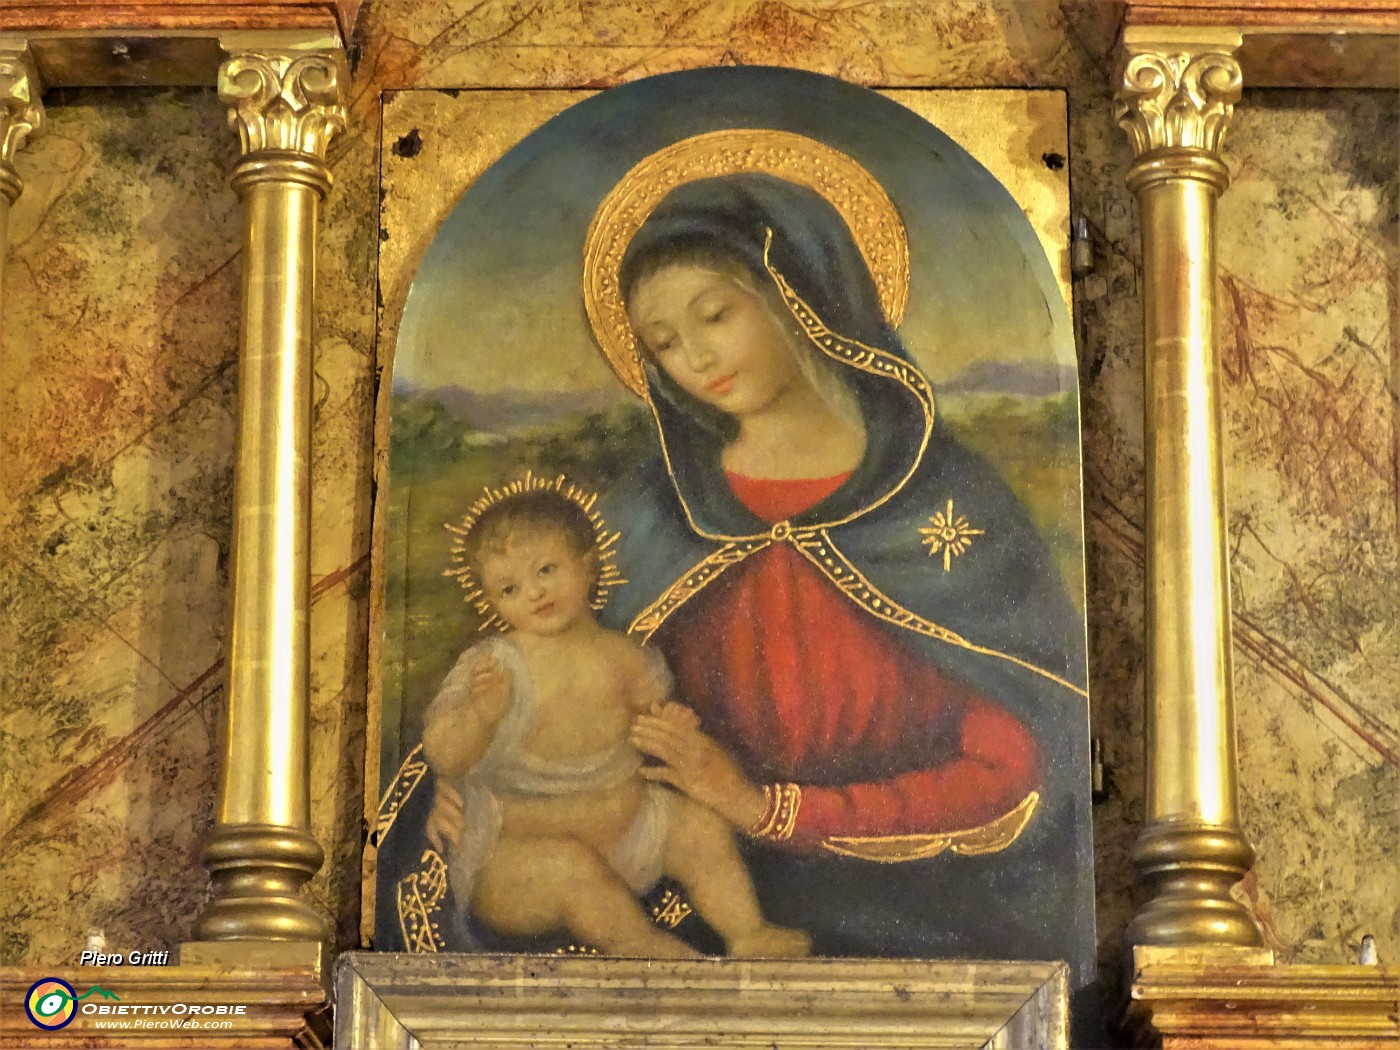 56 Cappella con altare e dipinto Madonna con Bambino.JPG